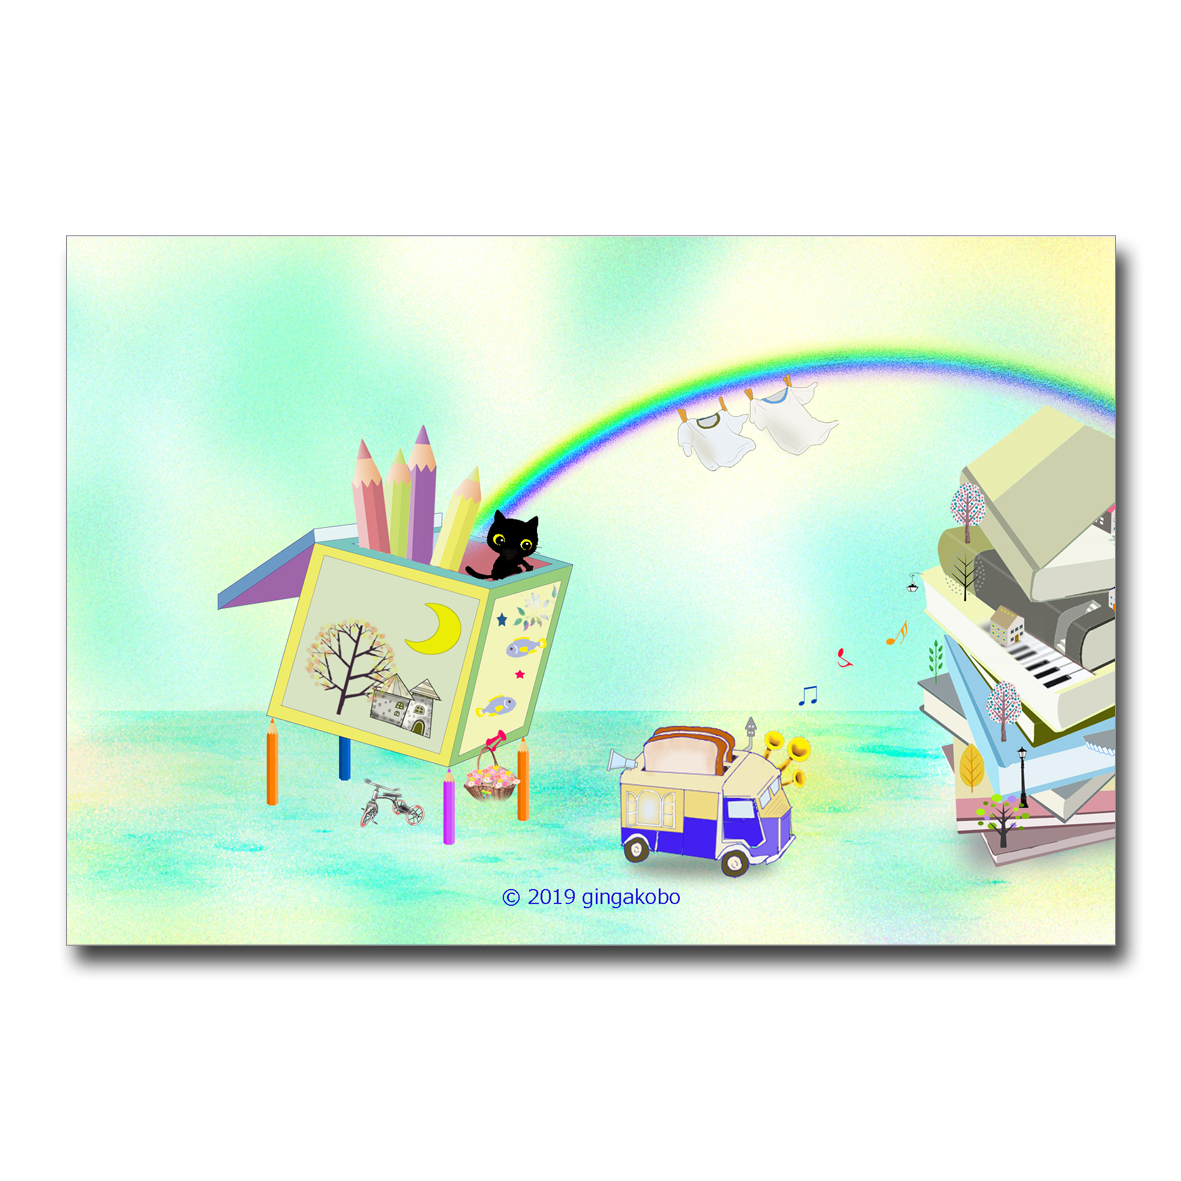 パ パ パン屋さんーーーー ちょっと待ってえ ほっこり癒しのイラストポストカード2枚組 No 5 Iichi ハンドメイド クラフト作品 手仕事品の通販